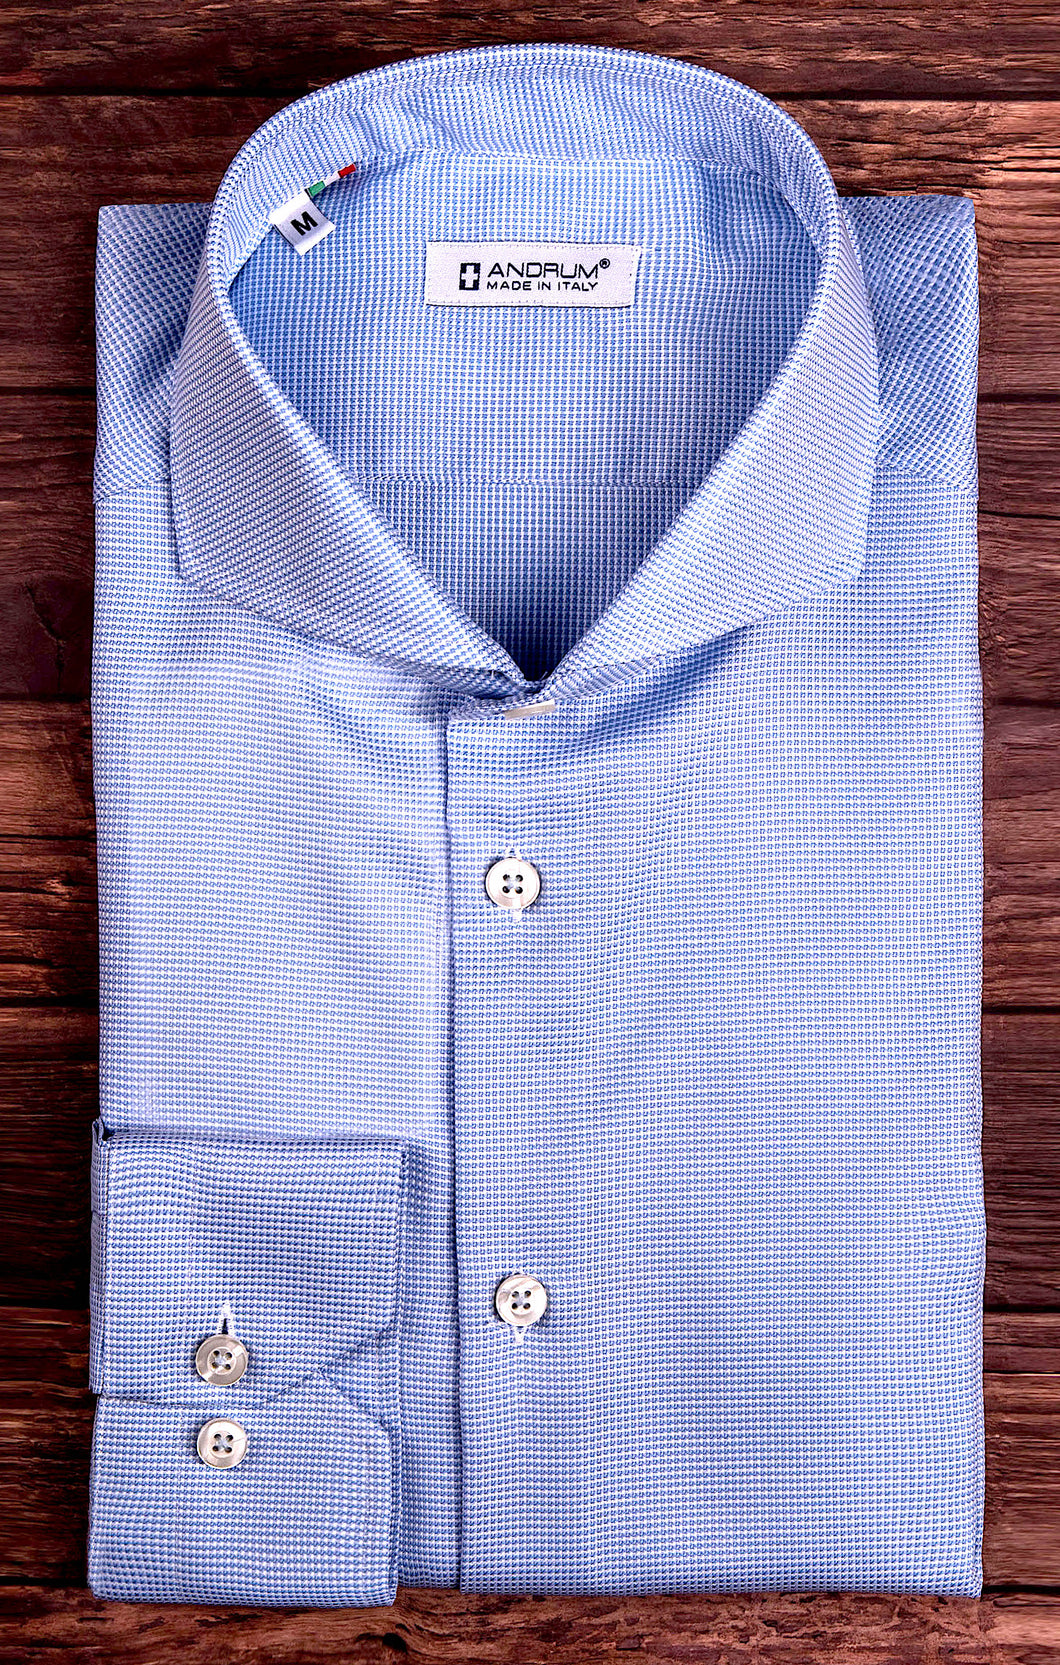 Camicia micro fantasia azzurro armaturato alta qualità puro cotone Pied de Poule made in italy